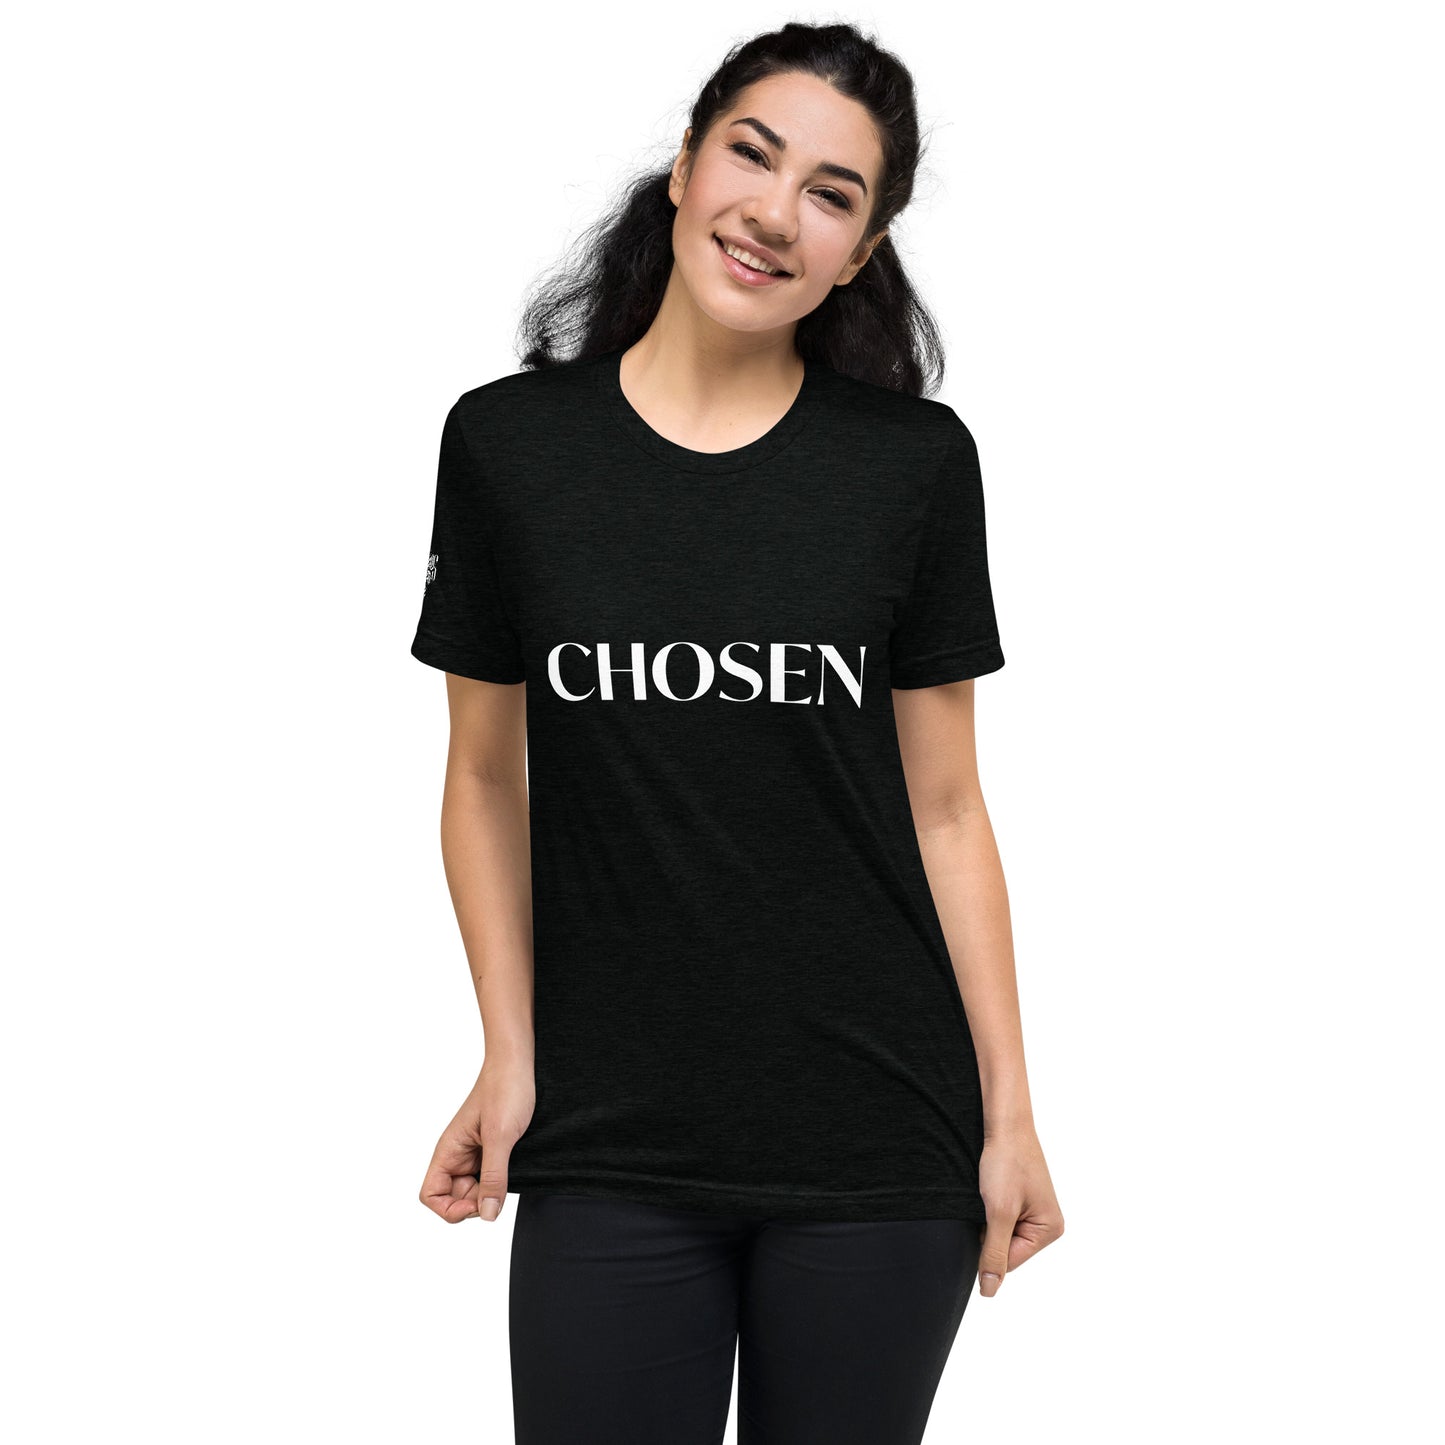 Camiseta "Chosen" Unisex